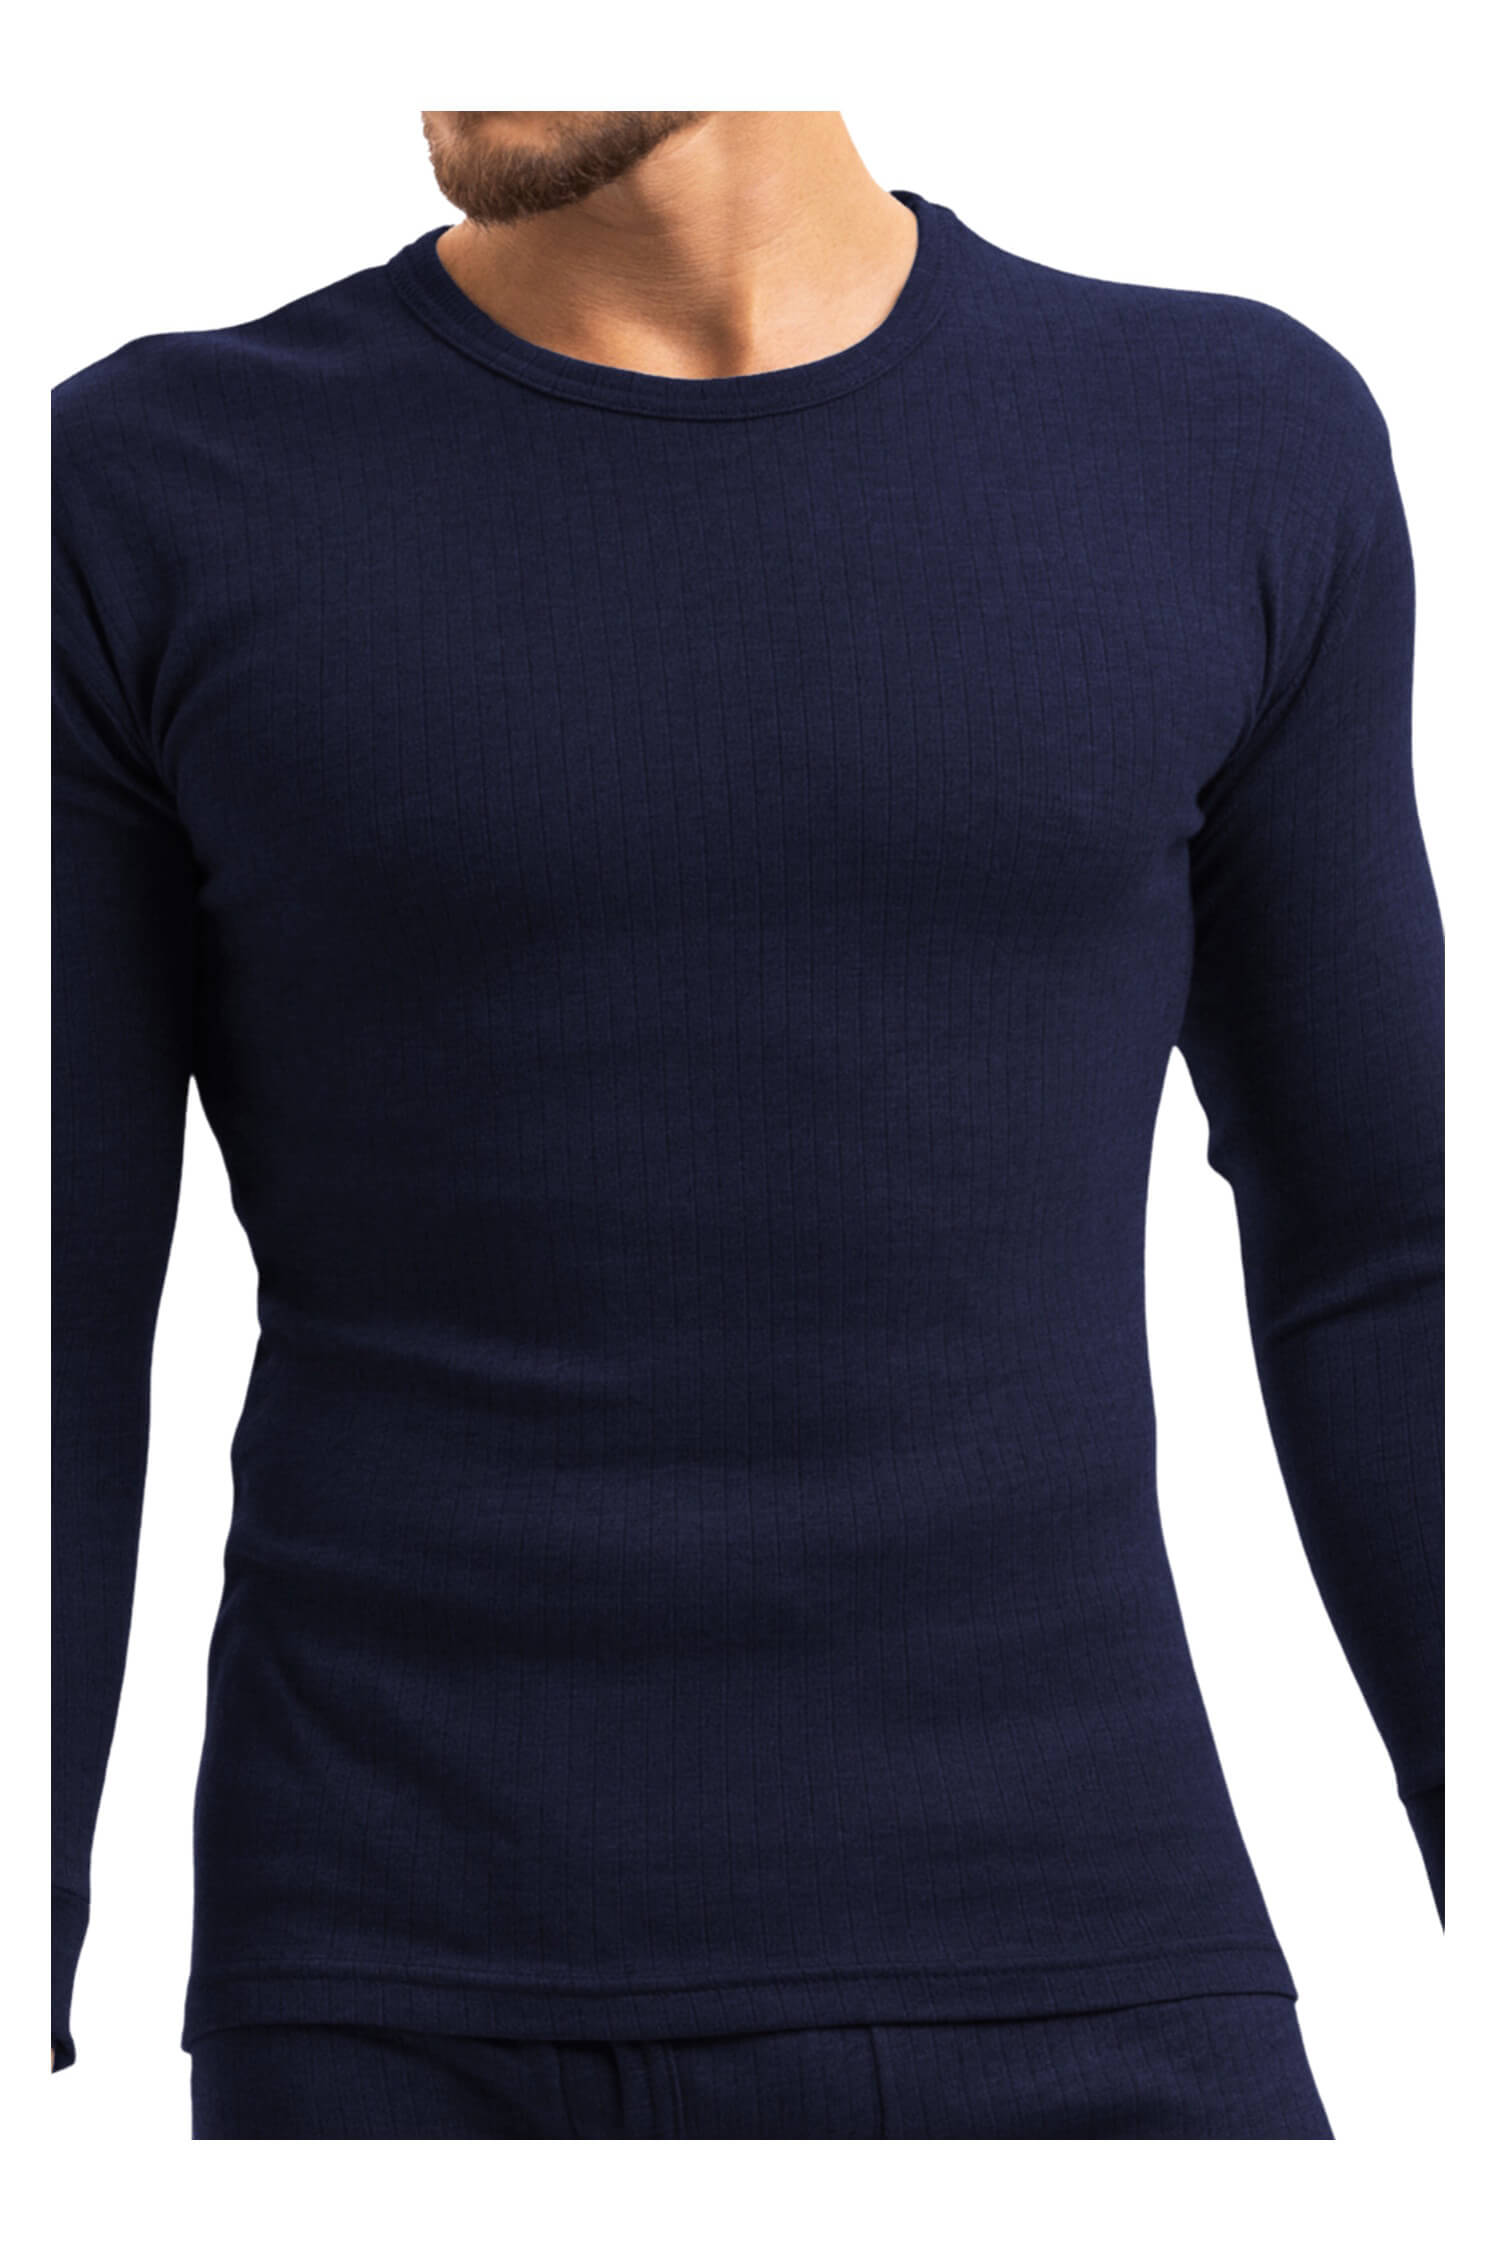 Braňo pánské thermo tričko 256 XL tmavě modrá